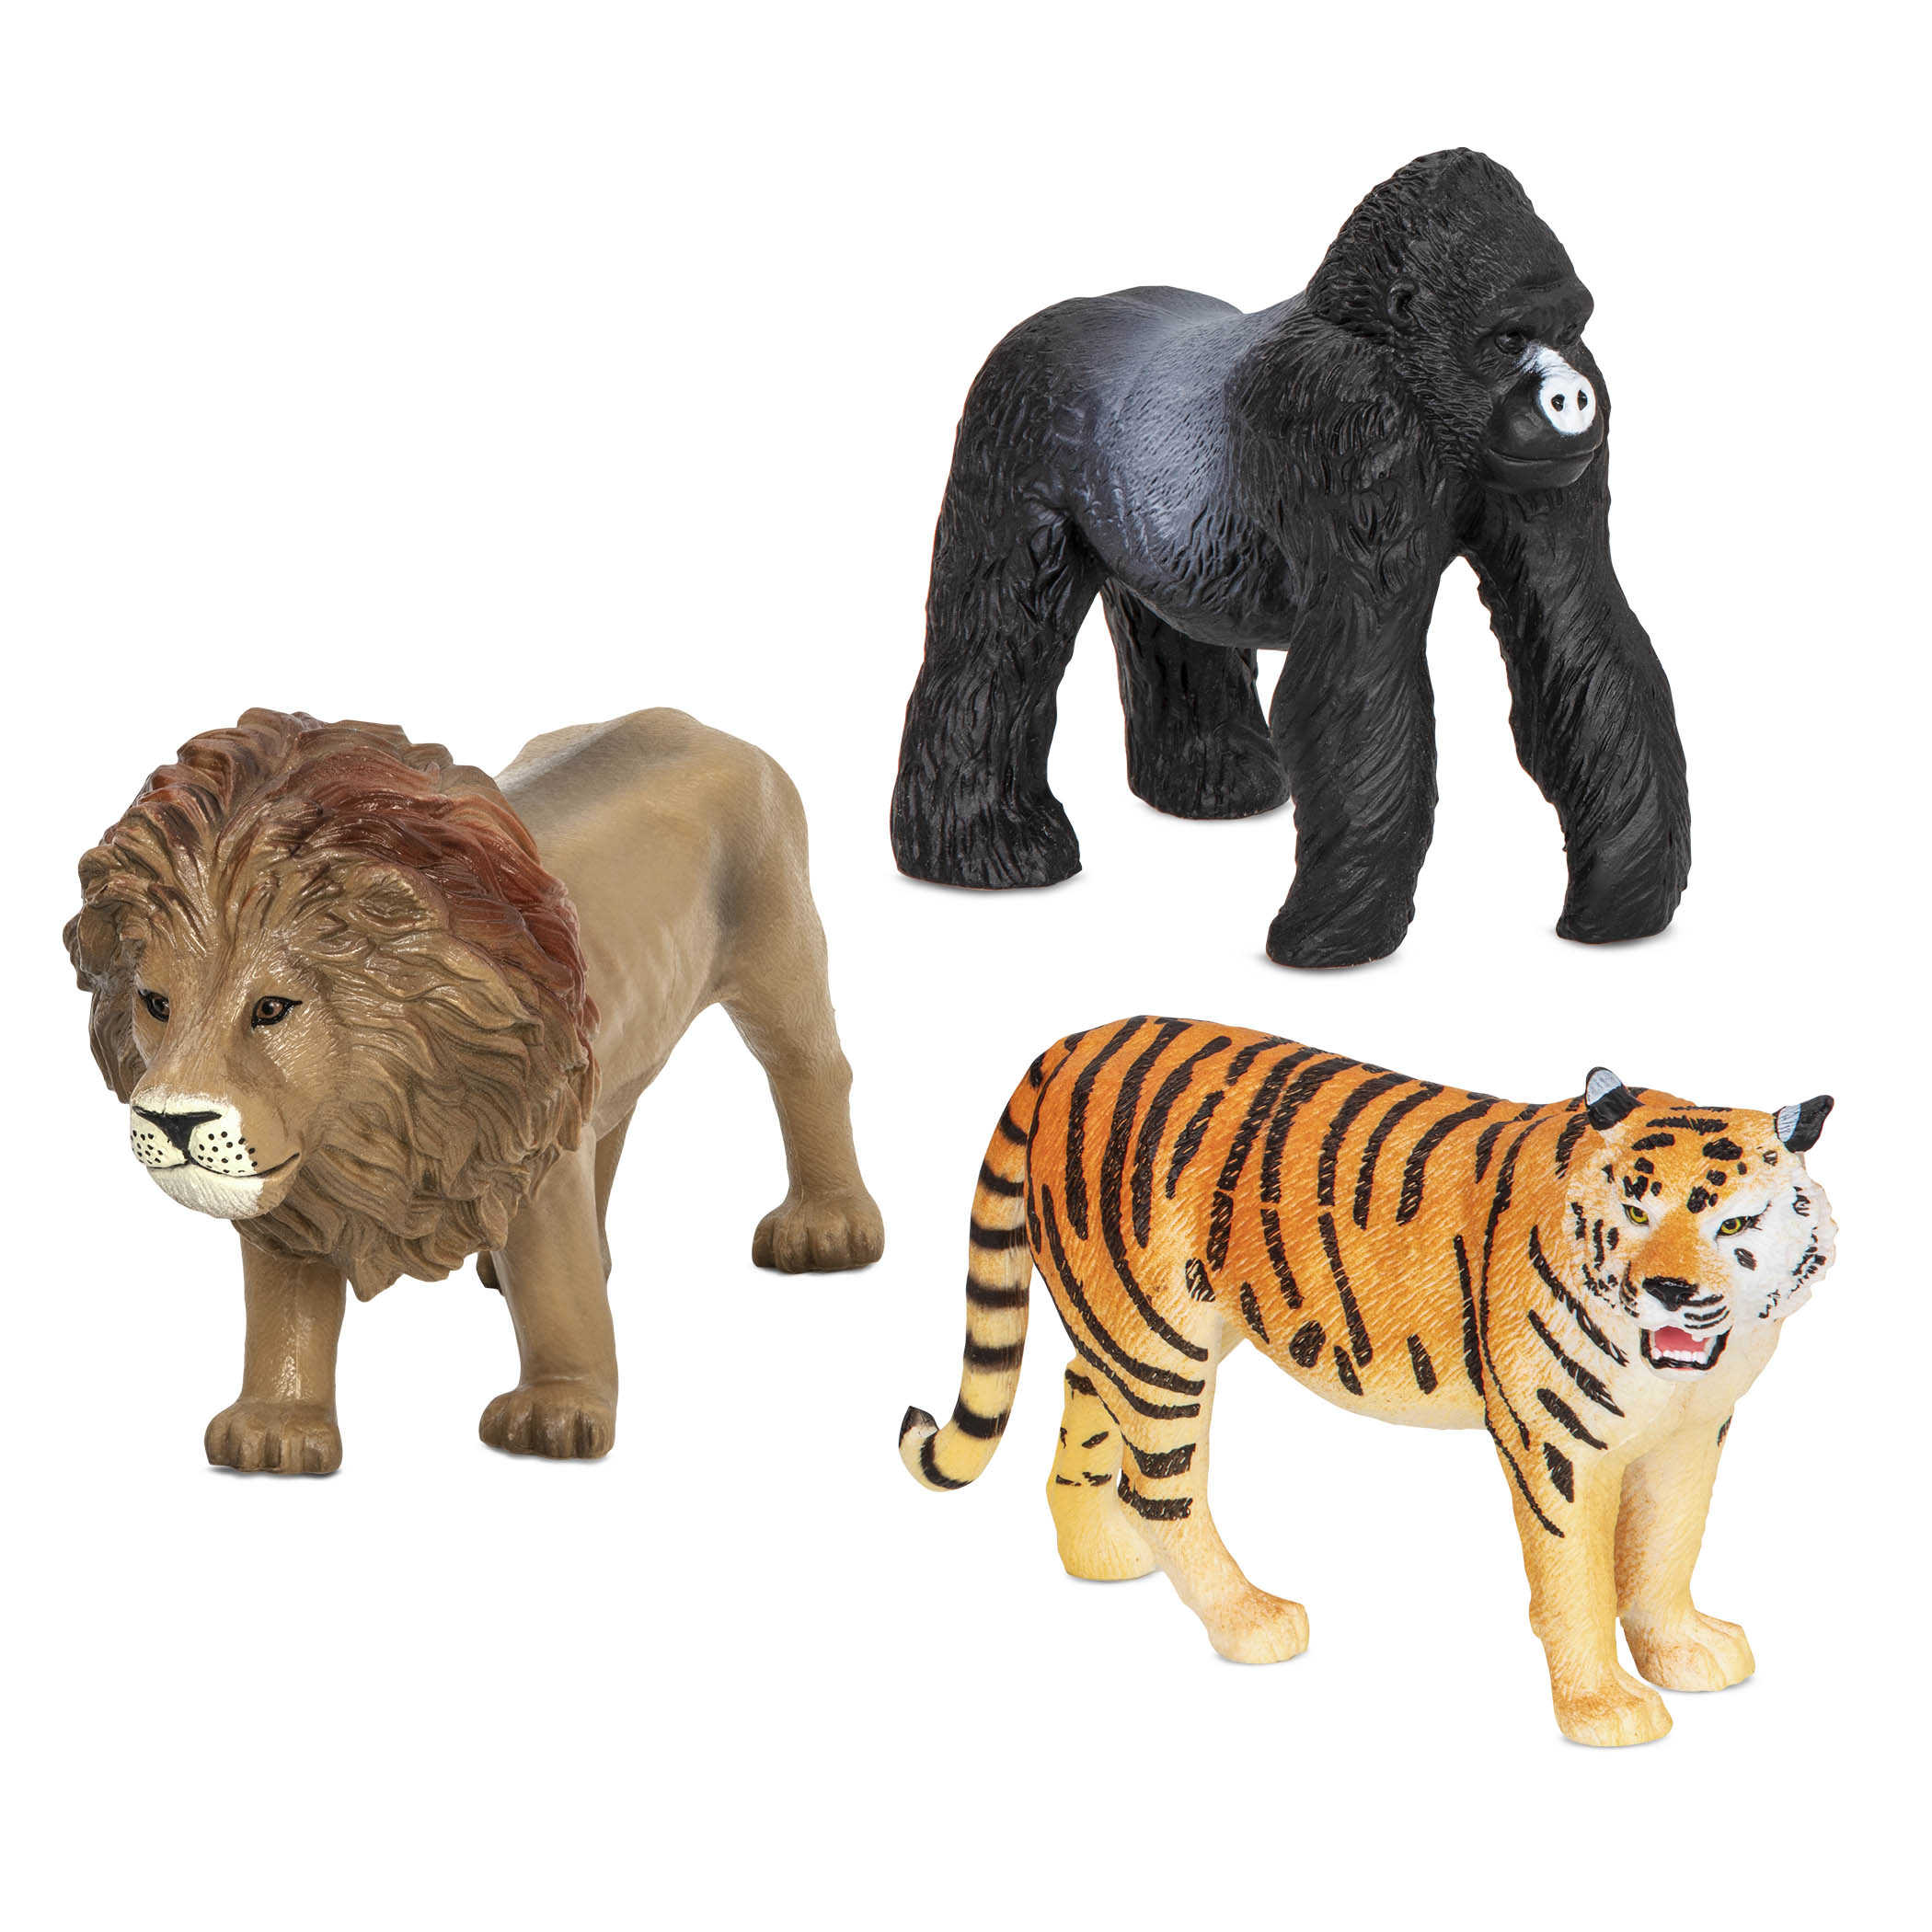 Animali della giungla Terra Leone, tigre e gorilla